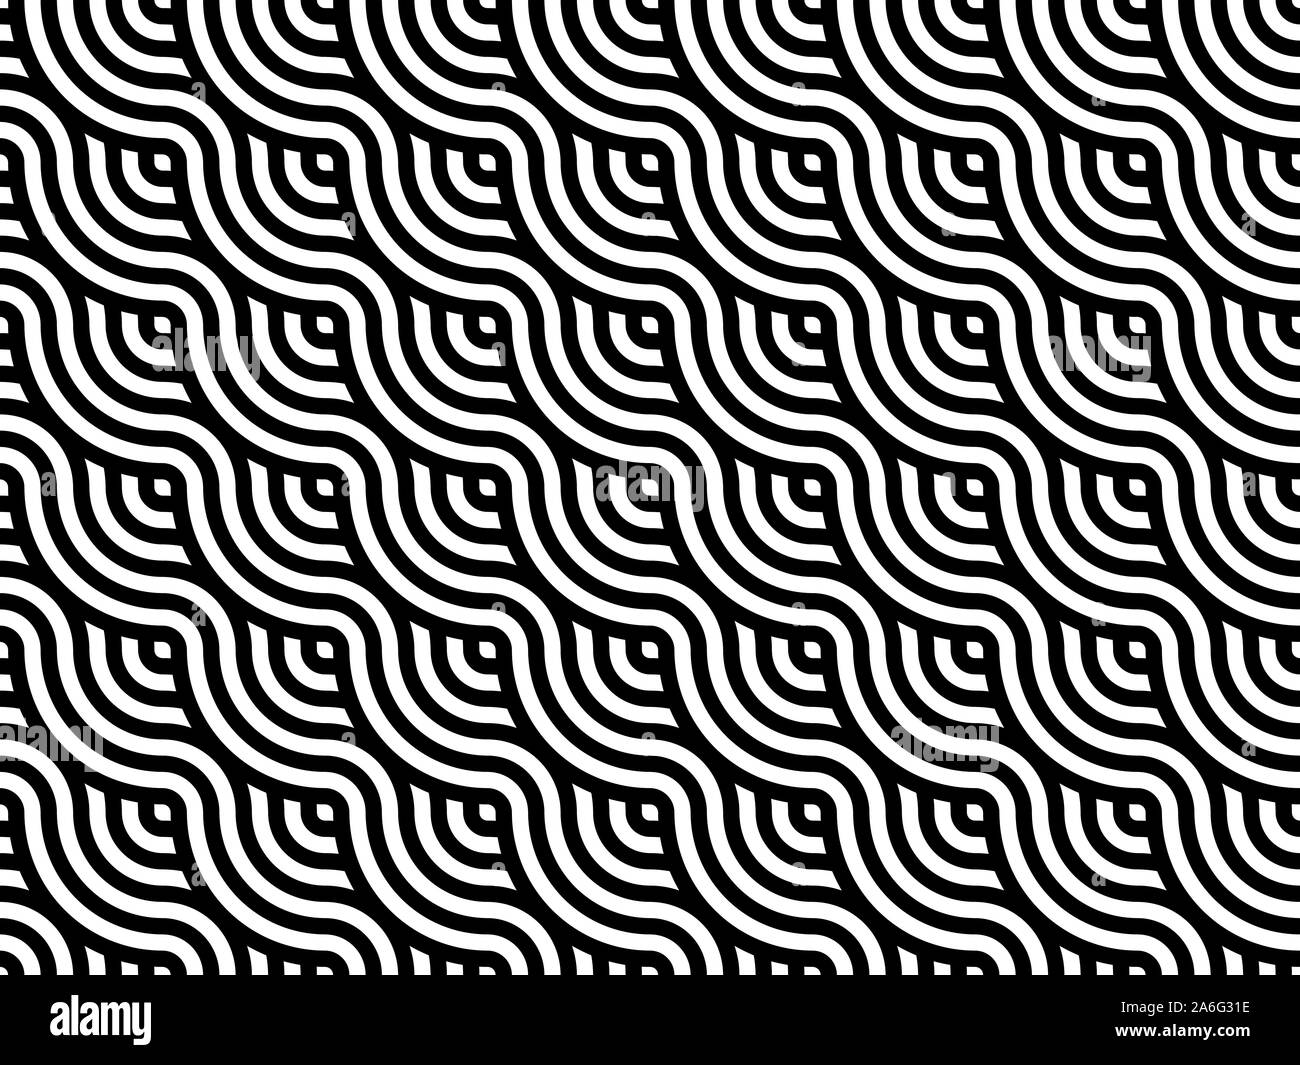 De style japonais, des lignes ondulées seamless pattern. Tissage de bandes noires et blanches. Motif géométrique abstraite moderne 600x600. Vector illustration Illustration de Vecteur